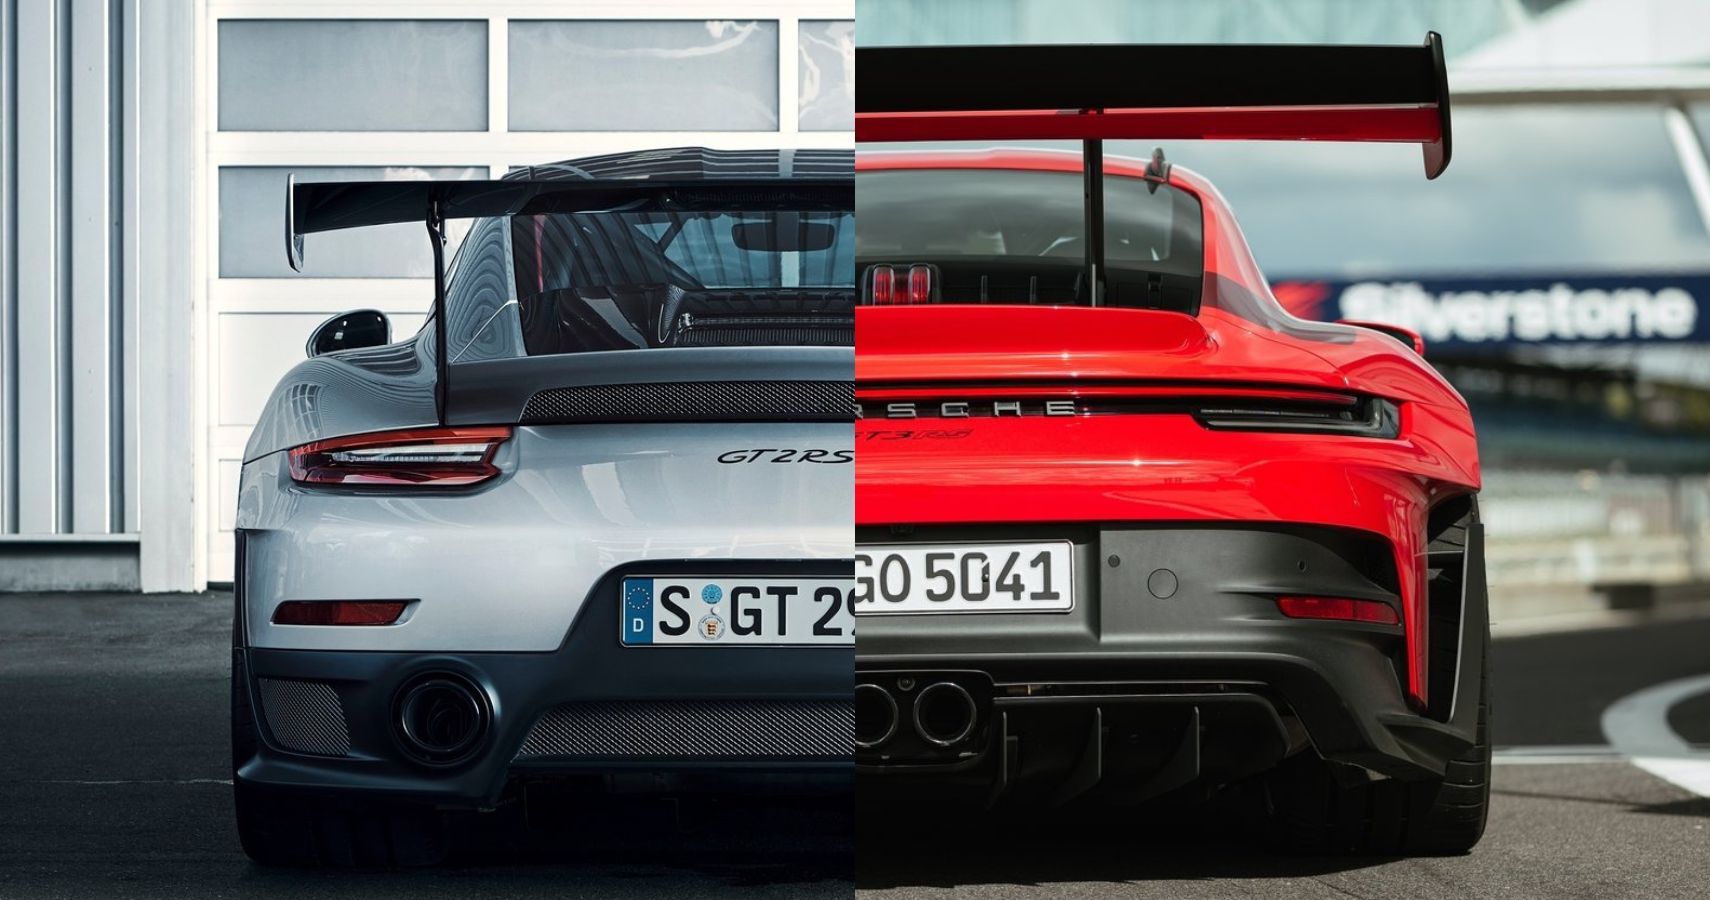 Porsche 911 GT2 RS Vs GT3 RS rear fascia comparison view